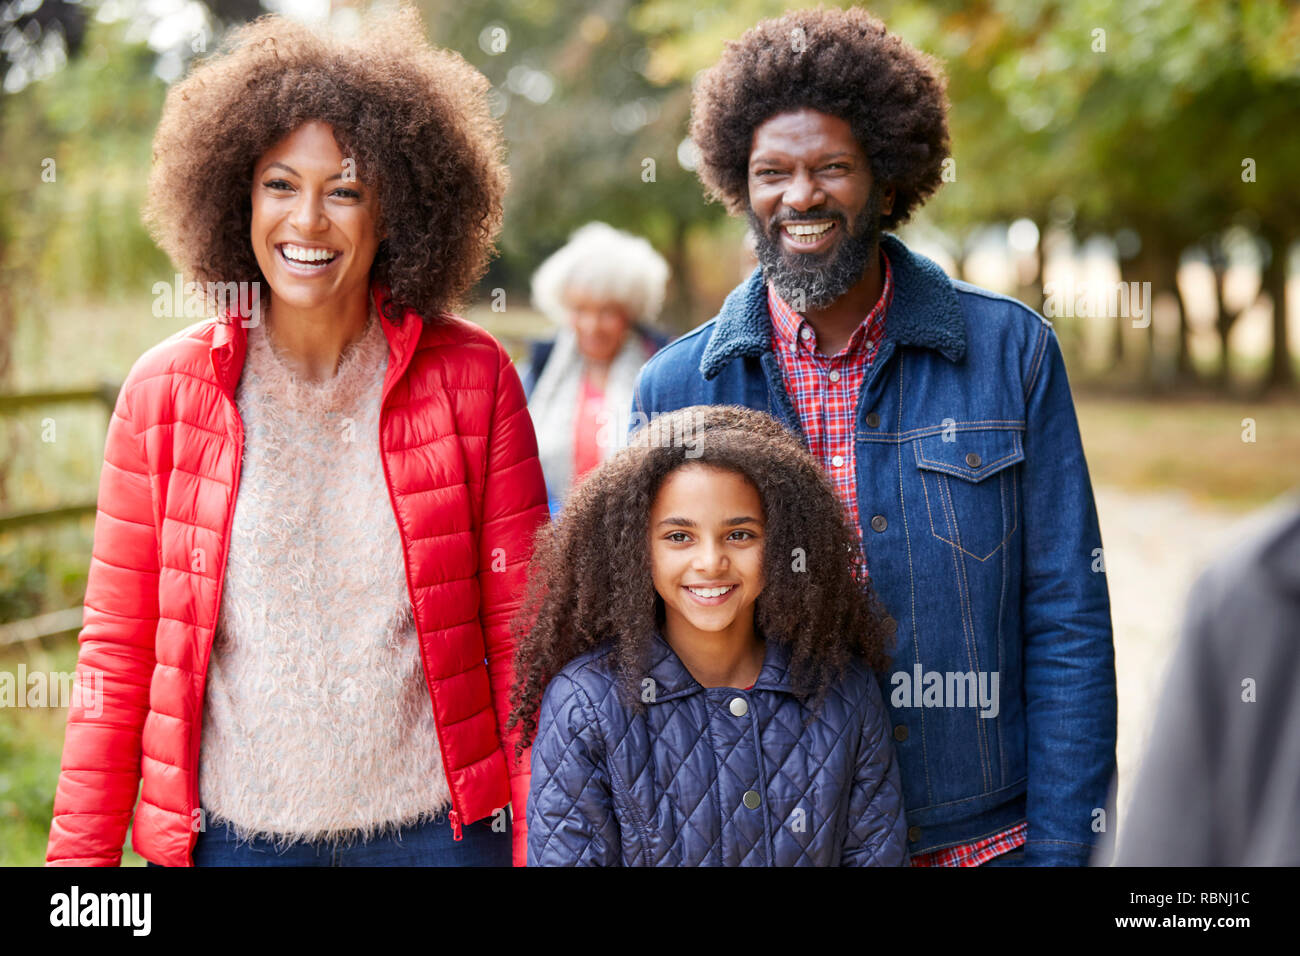 Multi-Generation Familie auf Herbst Spaziergang in der Landschaft zusammen Stockfoto